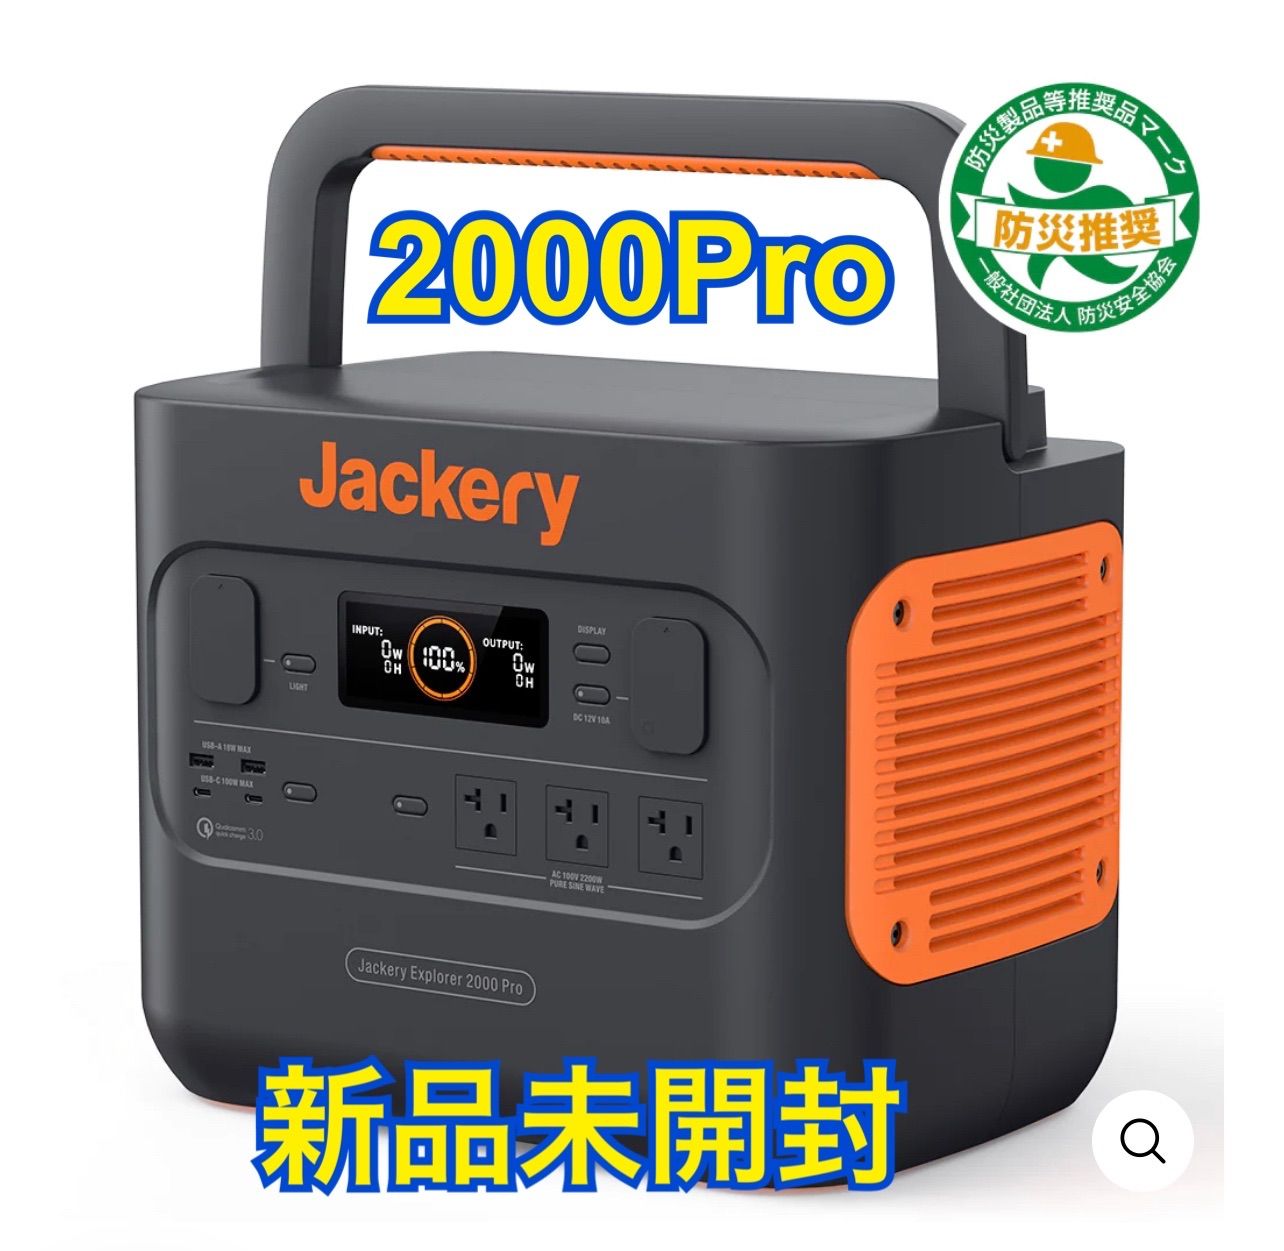 大容量】Jackery ポータブル電源 2000Pro. 新品未開封 - メルカリ